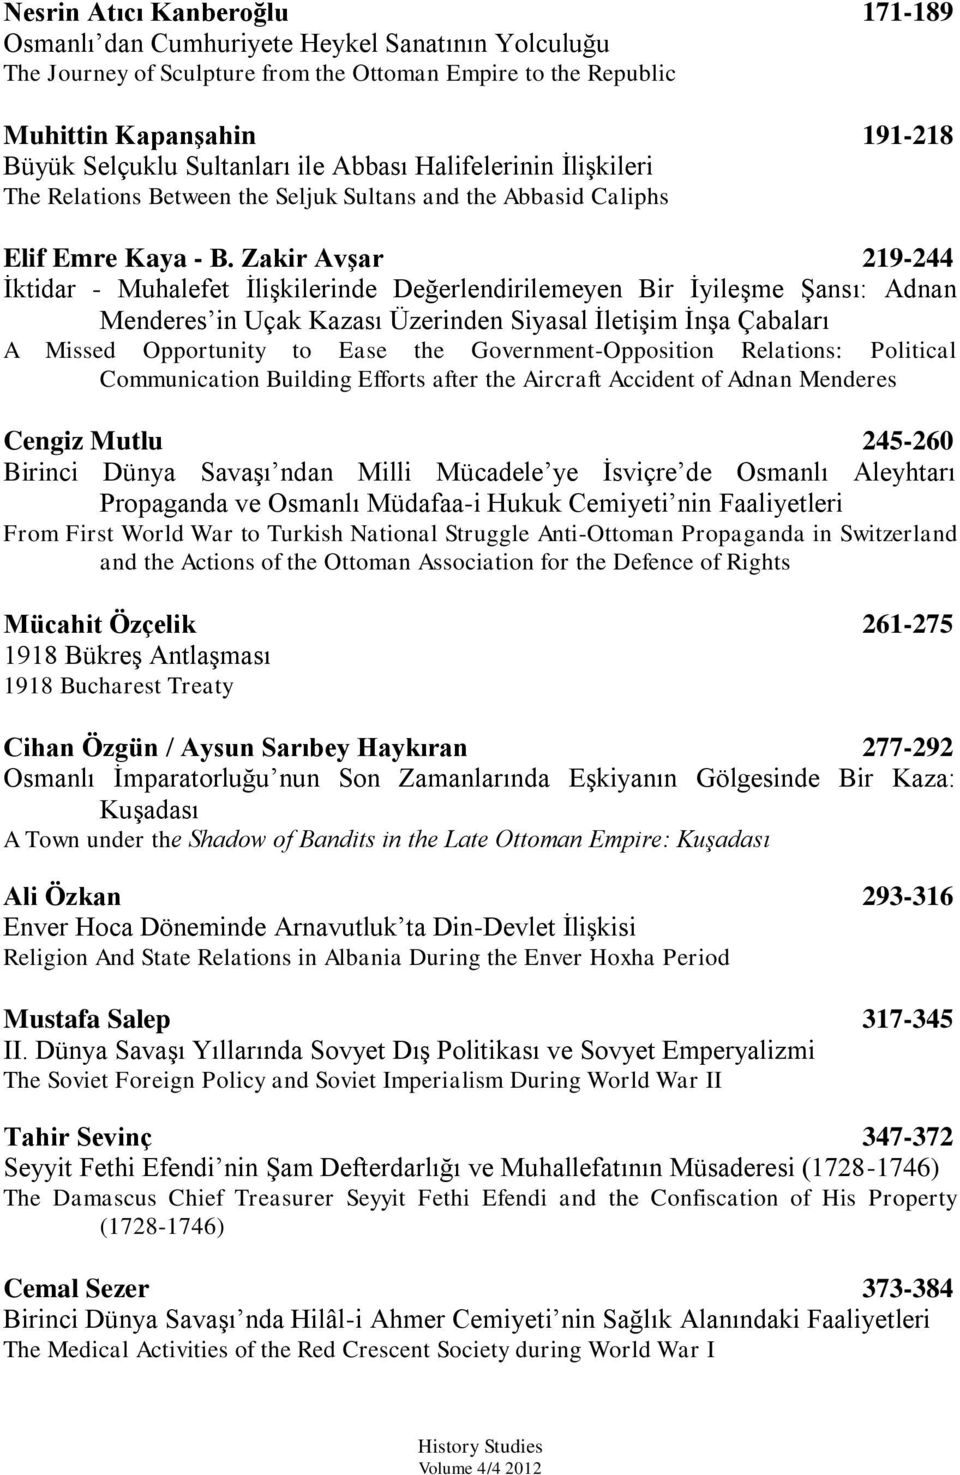 Zakir Avşar 219-244 Ġktidar - Muhalefet ĠliĢkilerinde Değerlendirilemeyen Bir ĠyileĢme ġansı: Adnan Menderes in Uçak Kazası Üzerinden Siyasal ĠletiĢim ĠnĢa Çabaları A Missed Opportunity to Ease the